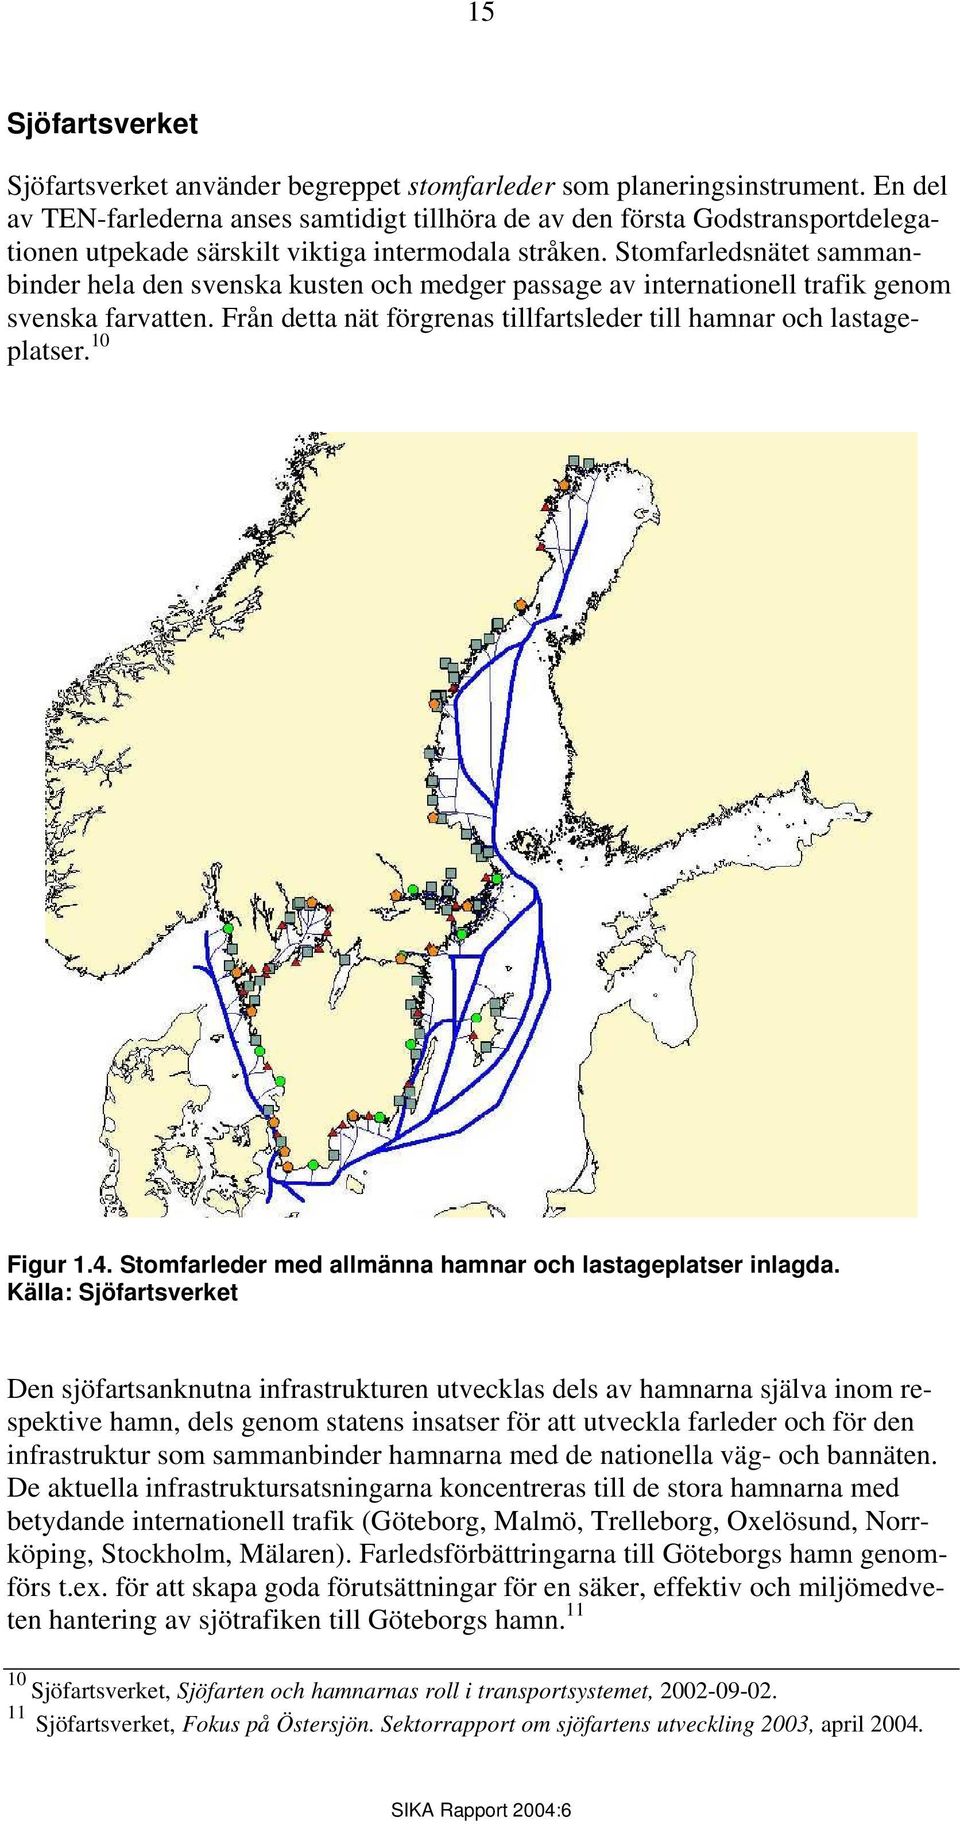 Stomfarledsnätet sammanbinder hela den svenska kusten och medger passage av internationell trafik genom svenska farvatten. Från detta nät förgrenas tillfartsleder till hamnar och lastageplatser.